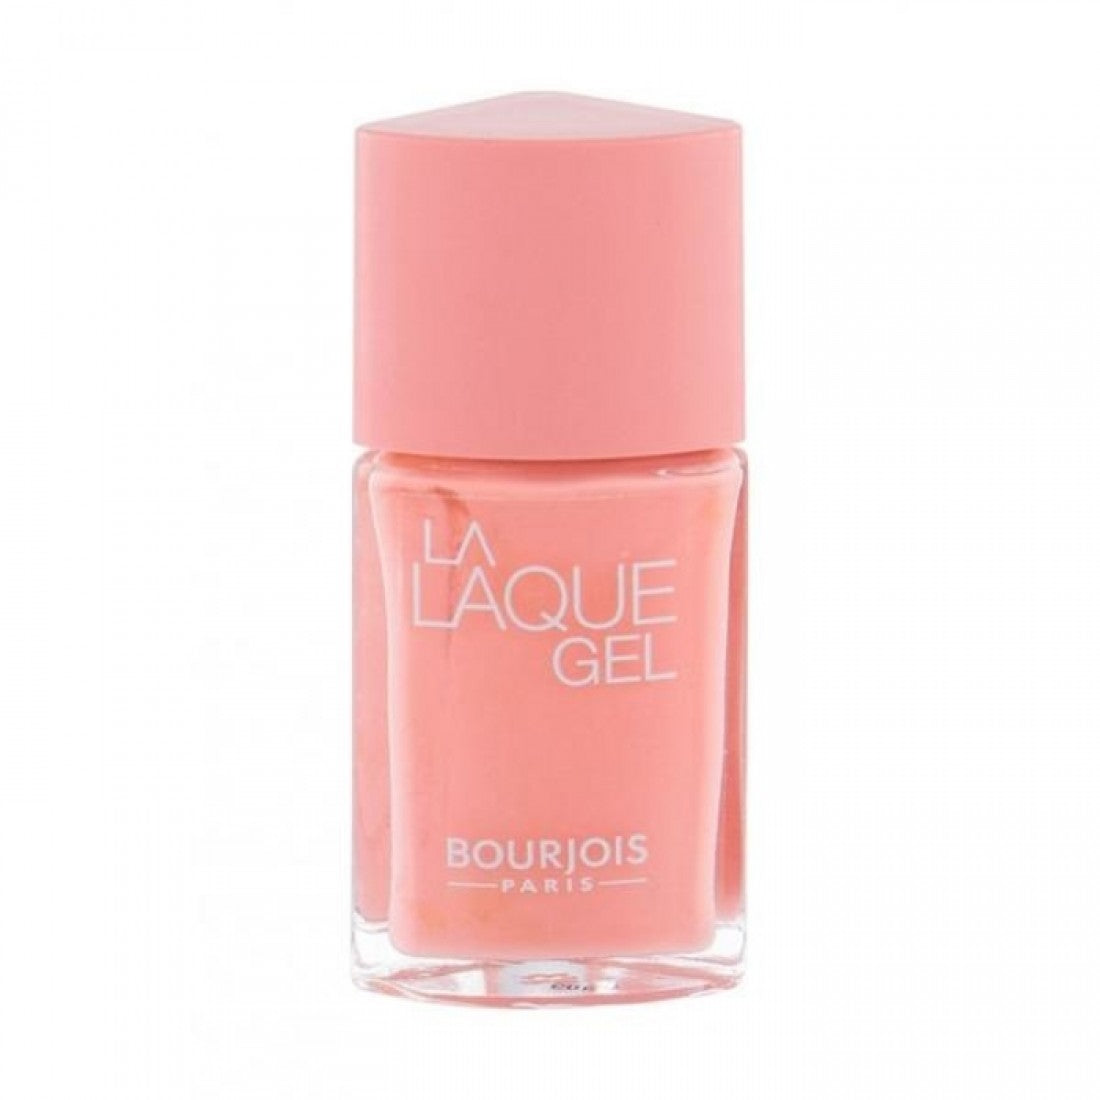 Bourjois La Laque Gel - The Nail polish League Pink Pakistan Pocket 14 – Beauty